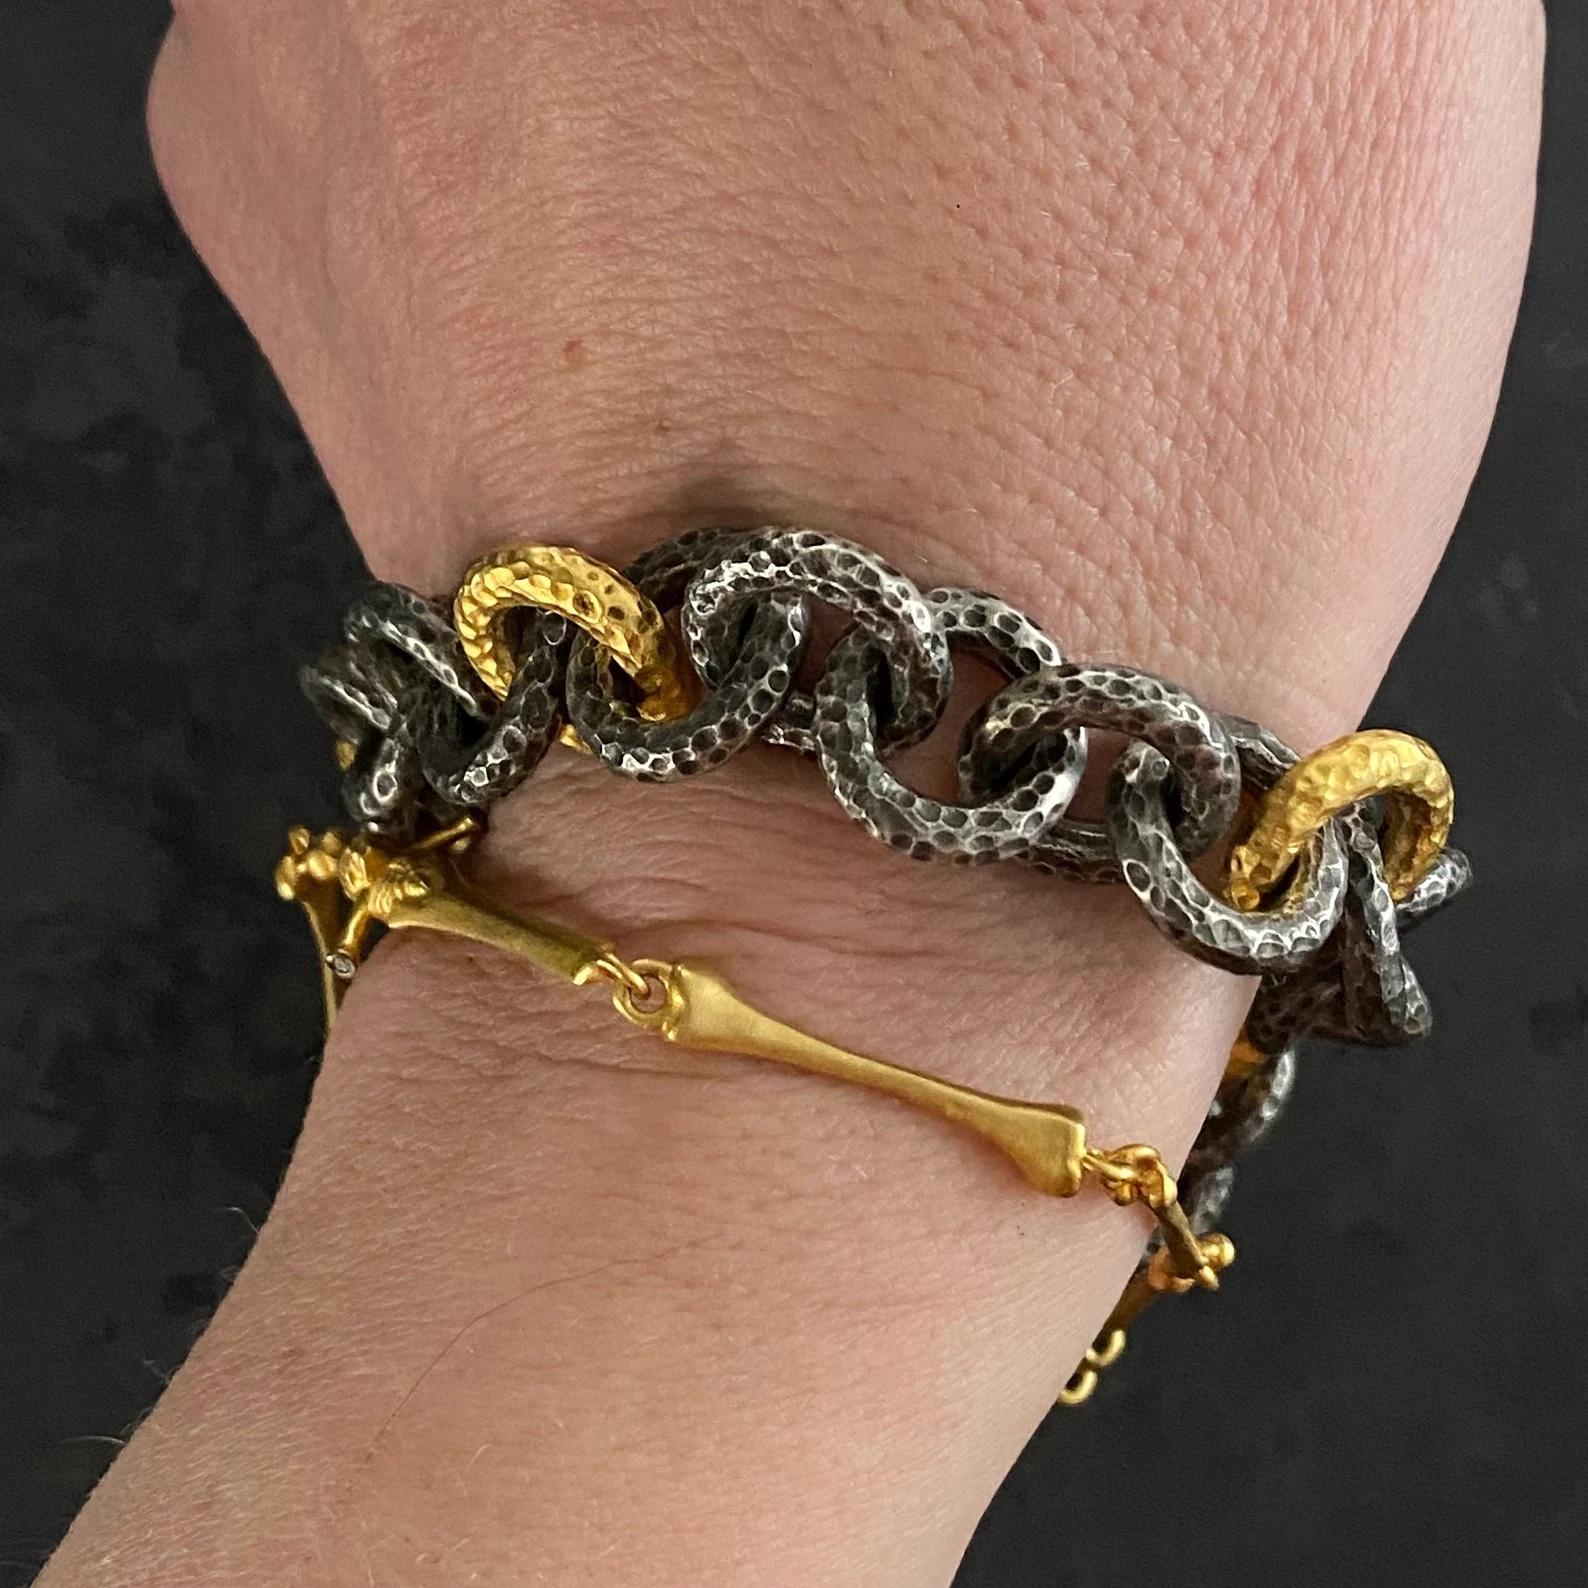 Grand bracelet à maillons en argent et or jaune 24 carats, martelé, avec fermoir à bascule en forme de diamant, par Kurtulan Jewellery d'Istanbul, Turquie, Taille : 9 pouces de long. 
Bracelet :
Longueur - 9